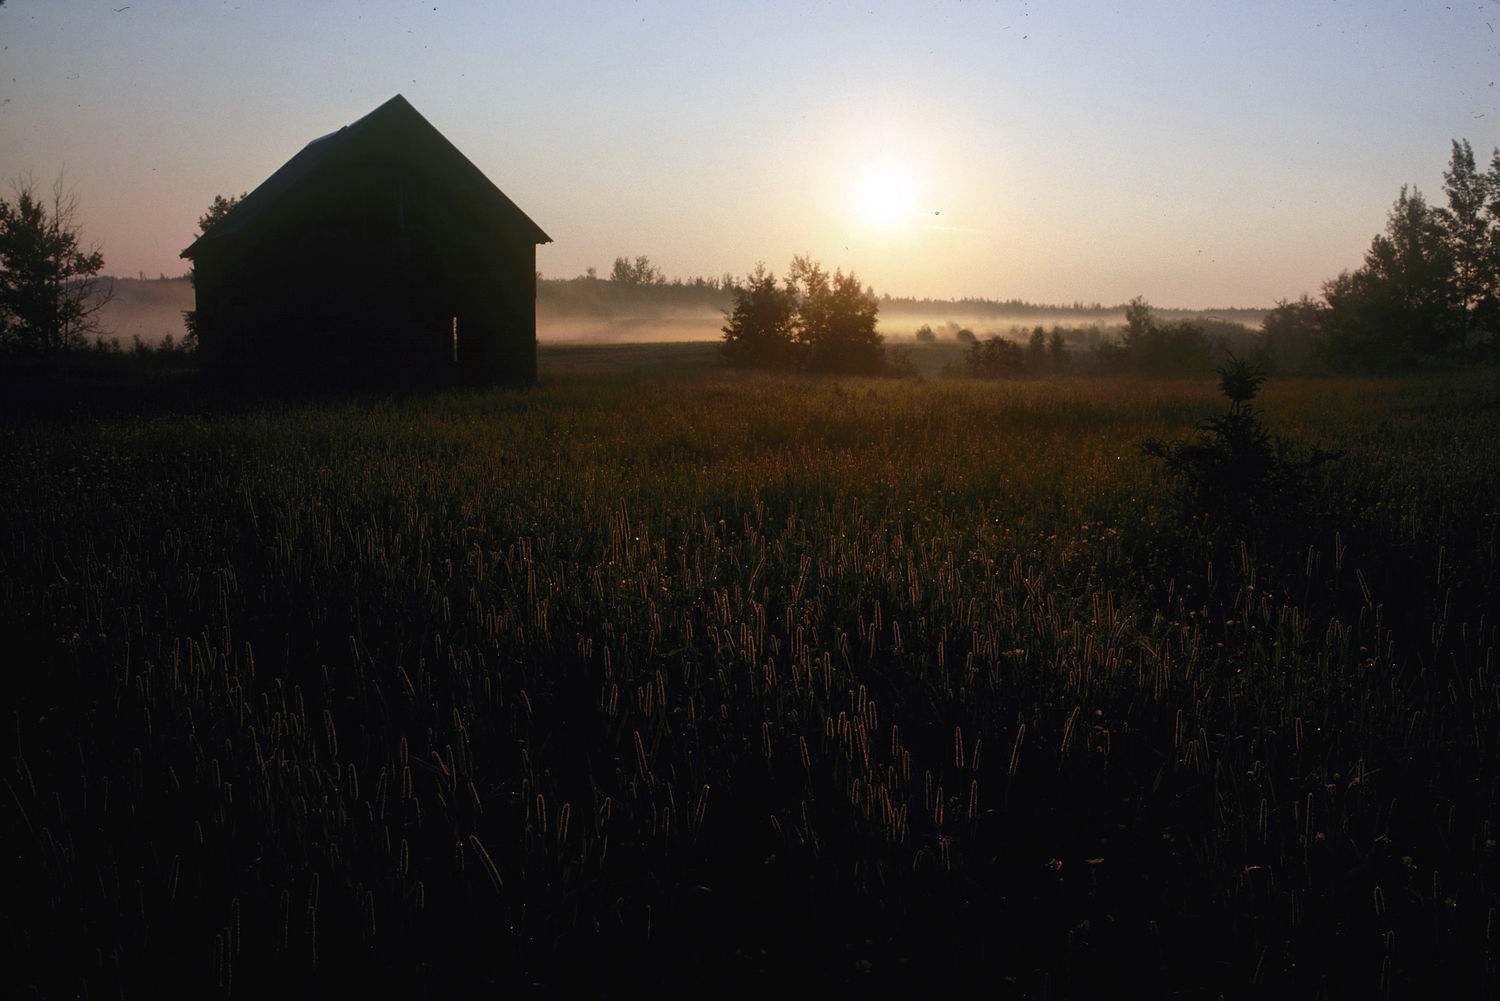 Vue extérieure d'un paysage rural, à l'aube, sur un champ et un bâtiment encore très peu éclairé. Une légère brume s'élève.